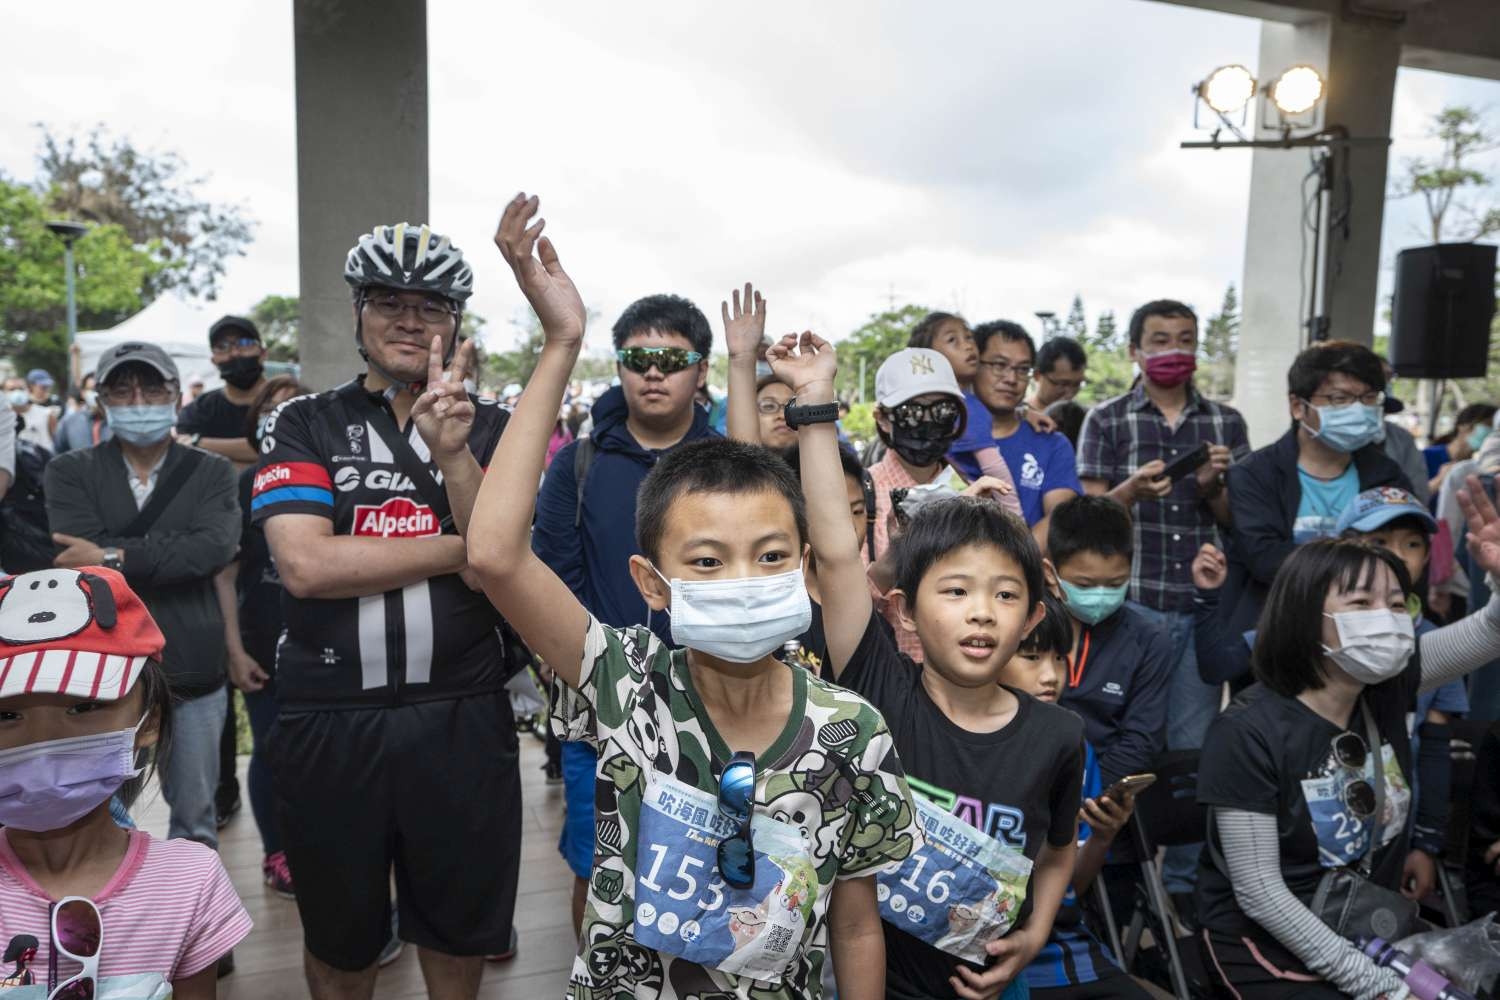 竹市親子單車活動「吹海風 吃好料 17公里海岸 親子單車遊」吸引許多人參加。